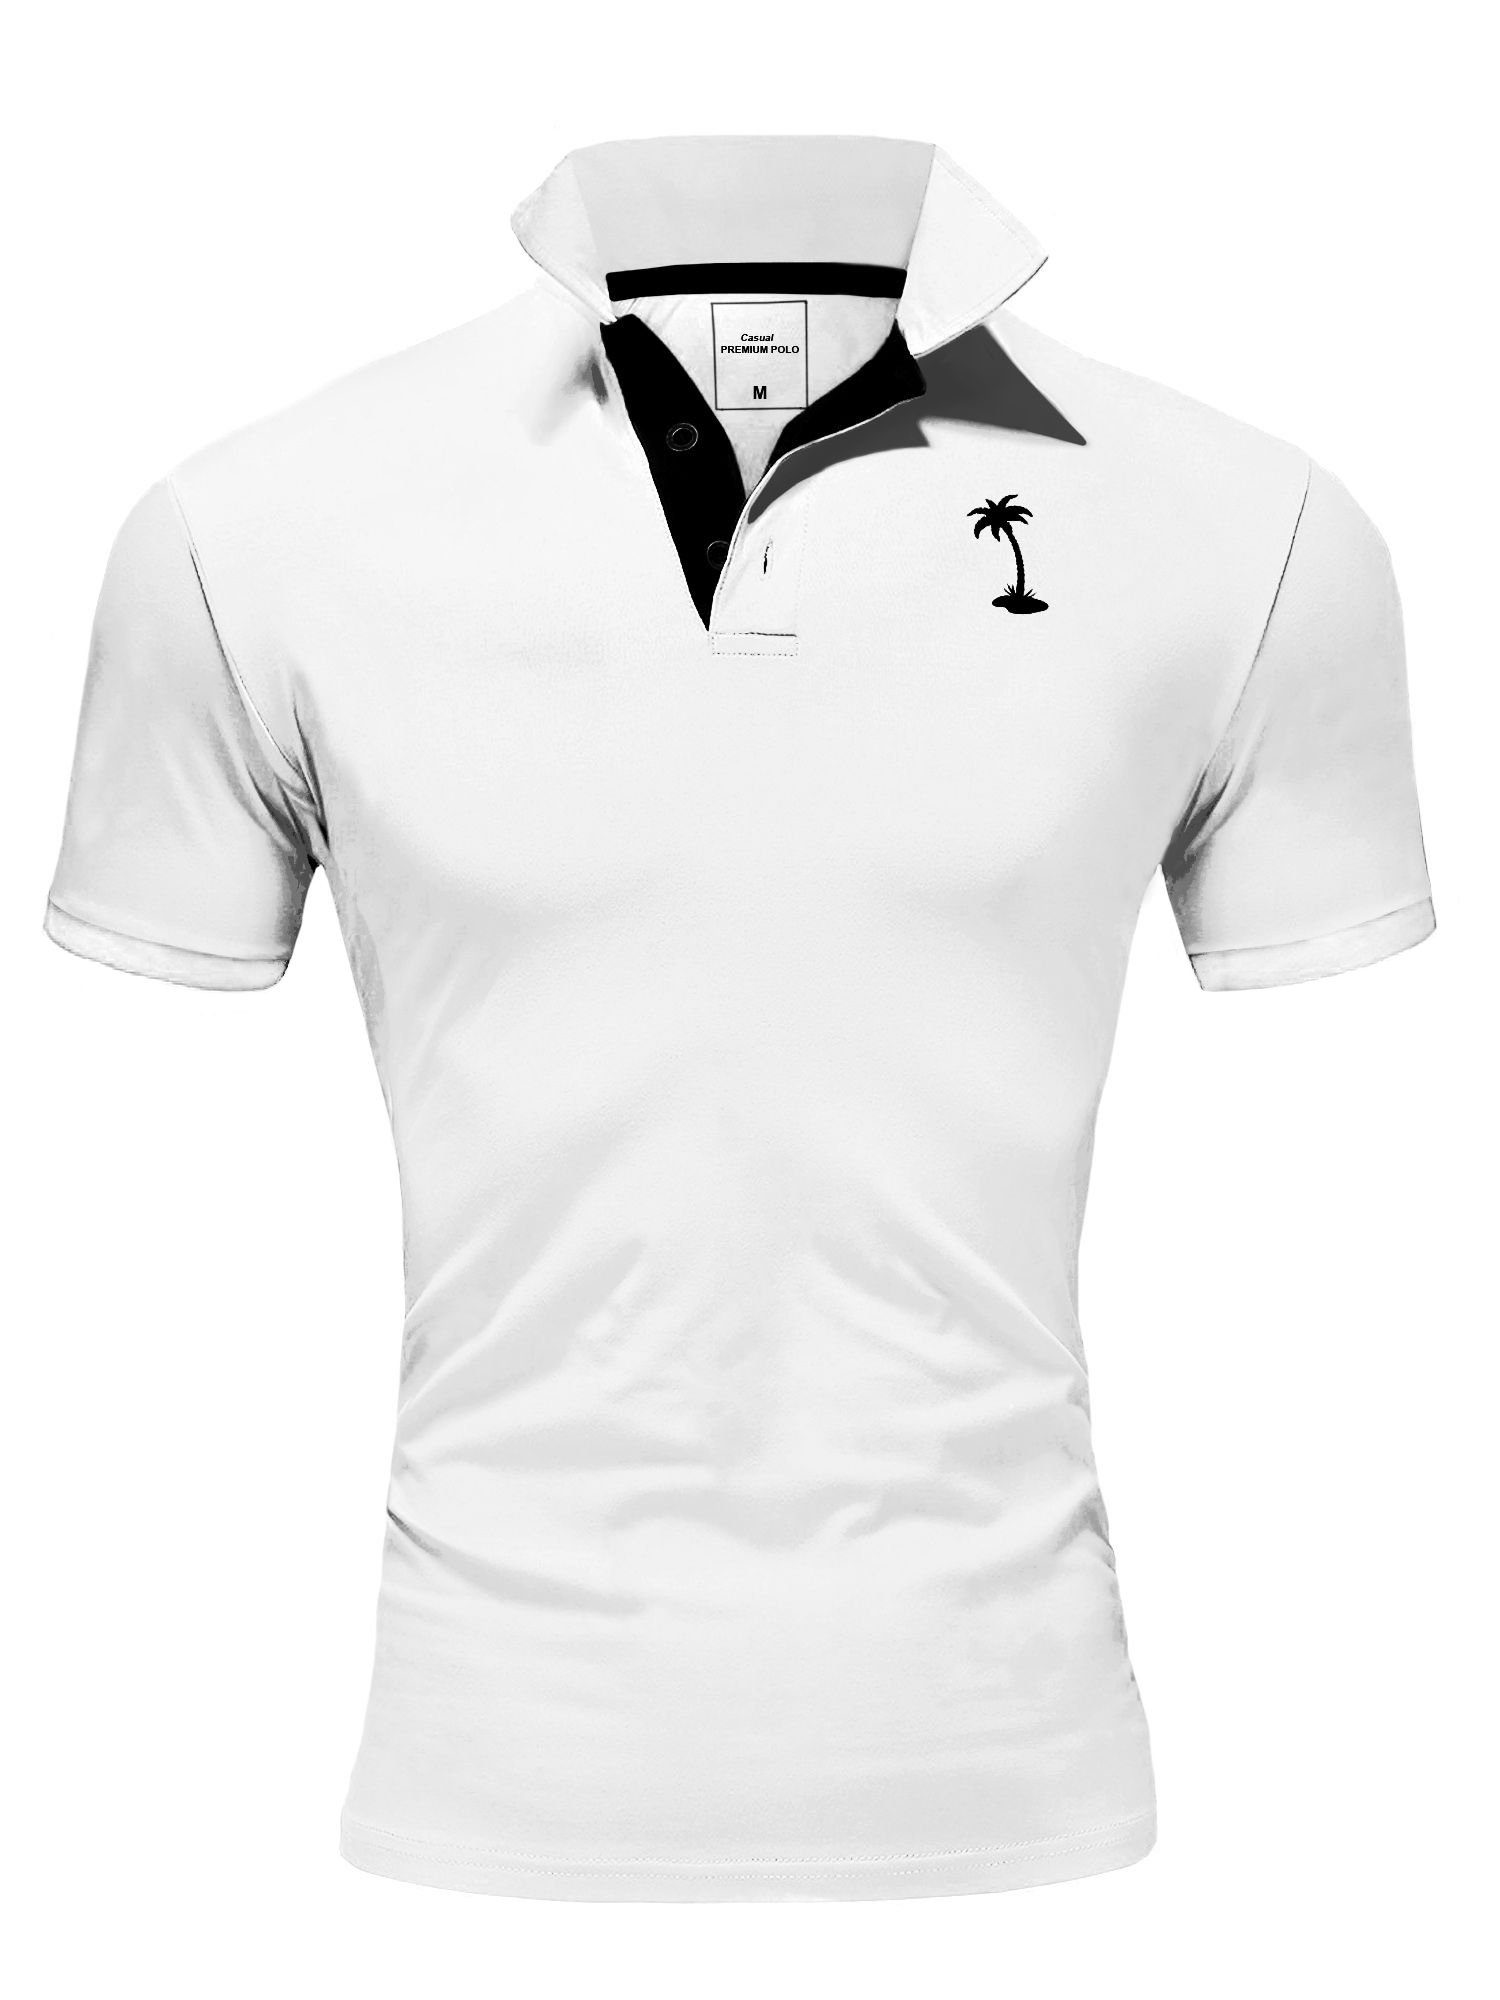 mit kontrastfarbigen Details weiß-schwarz Poloshirt behype PALMSON